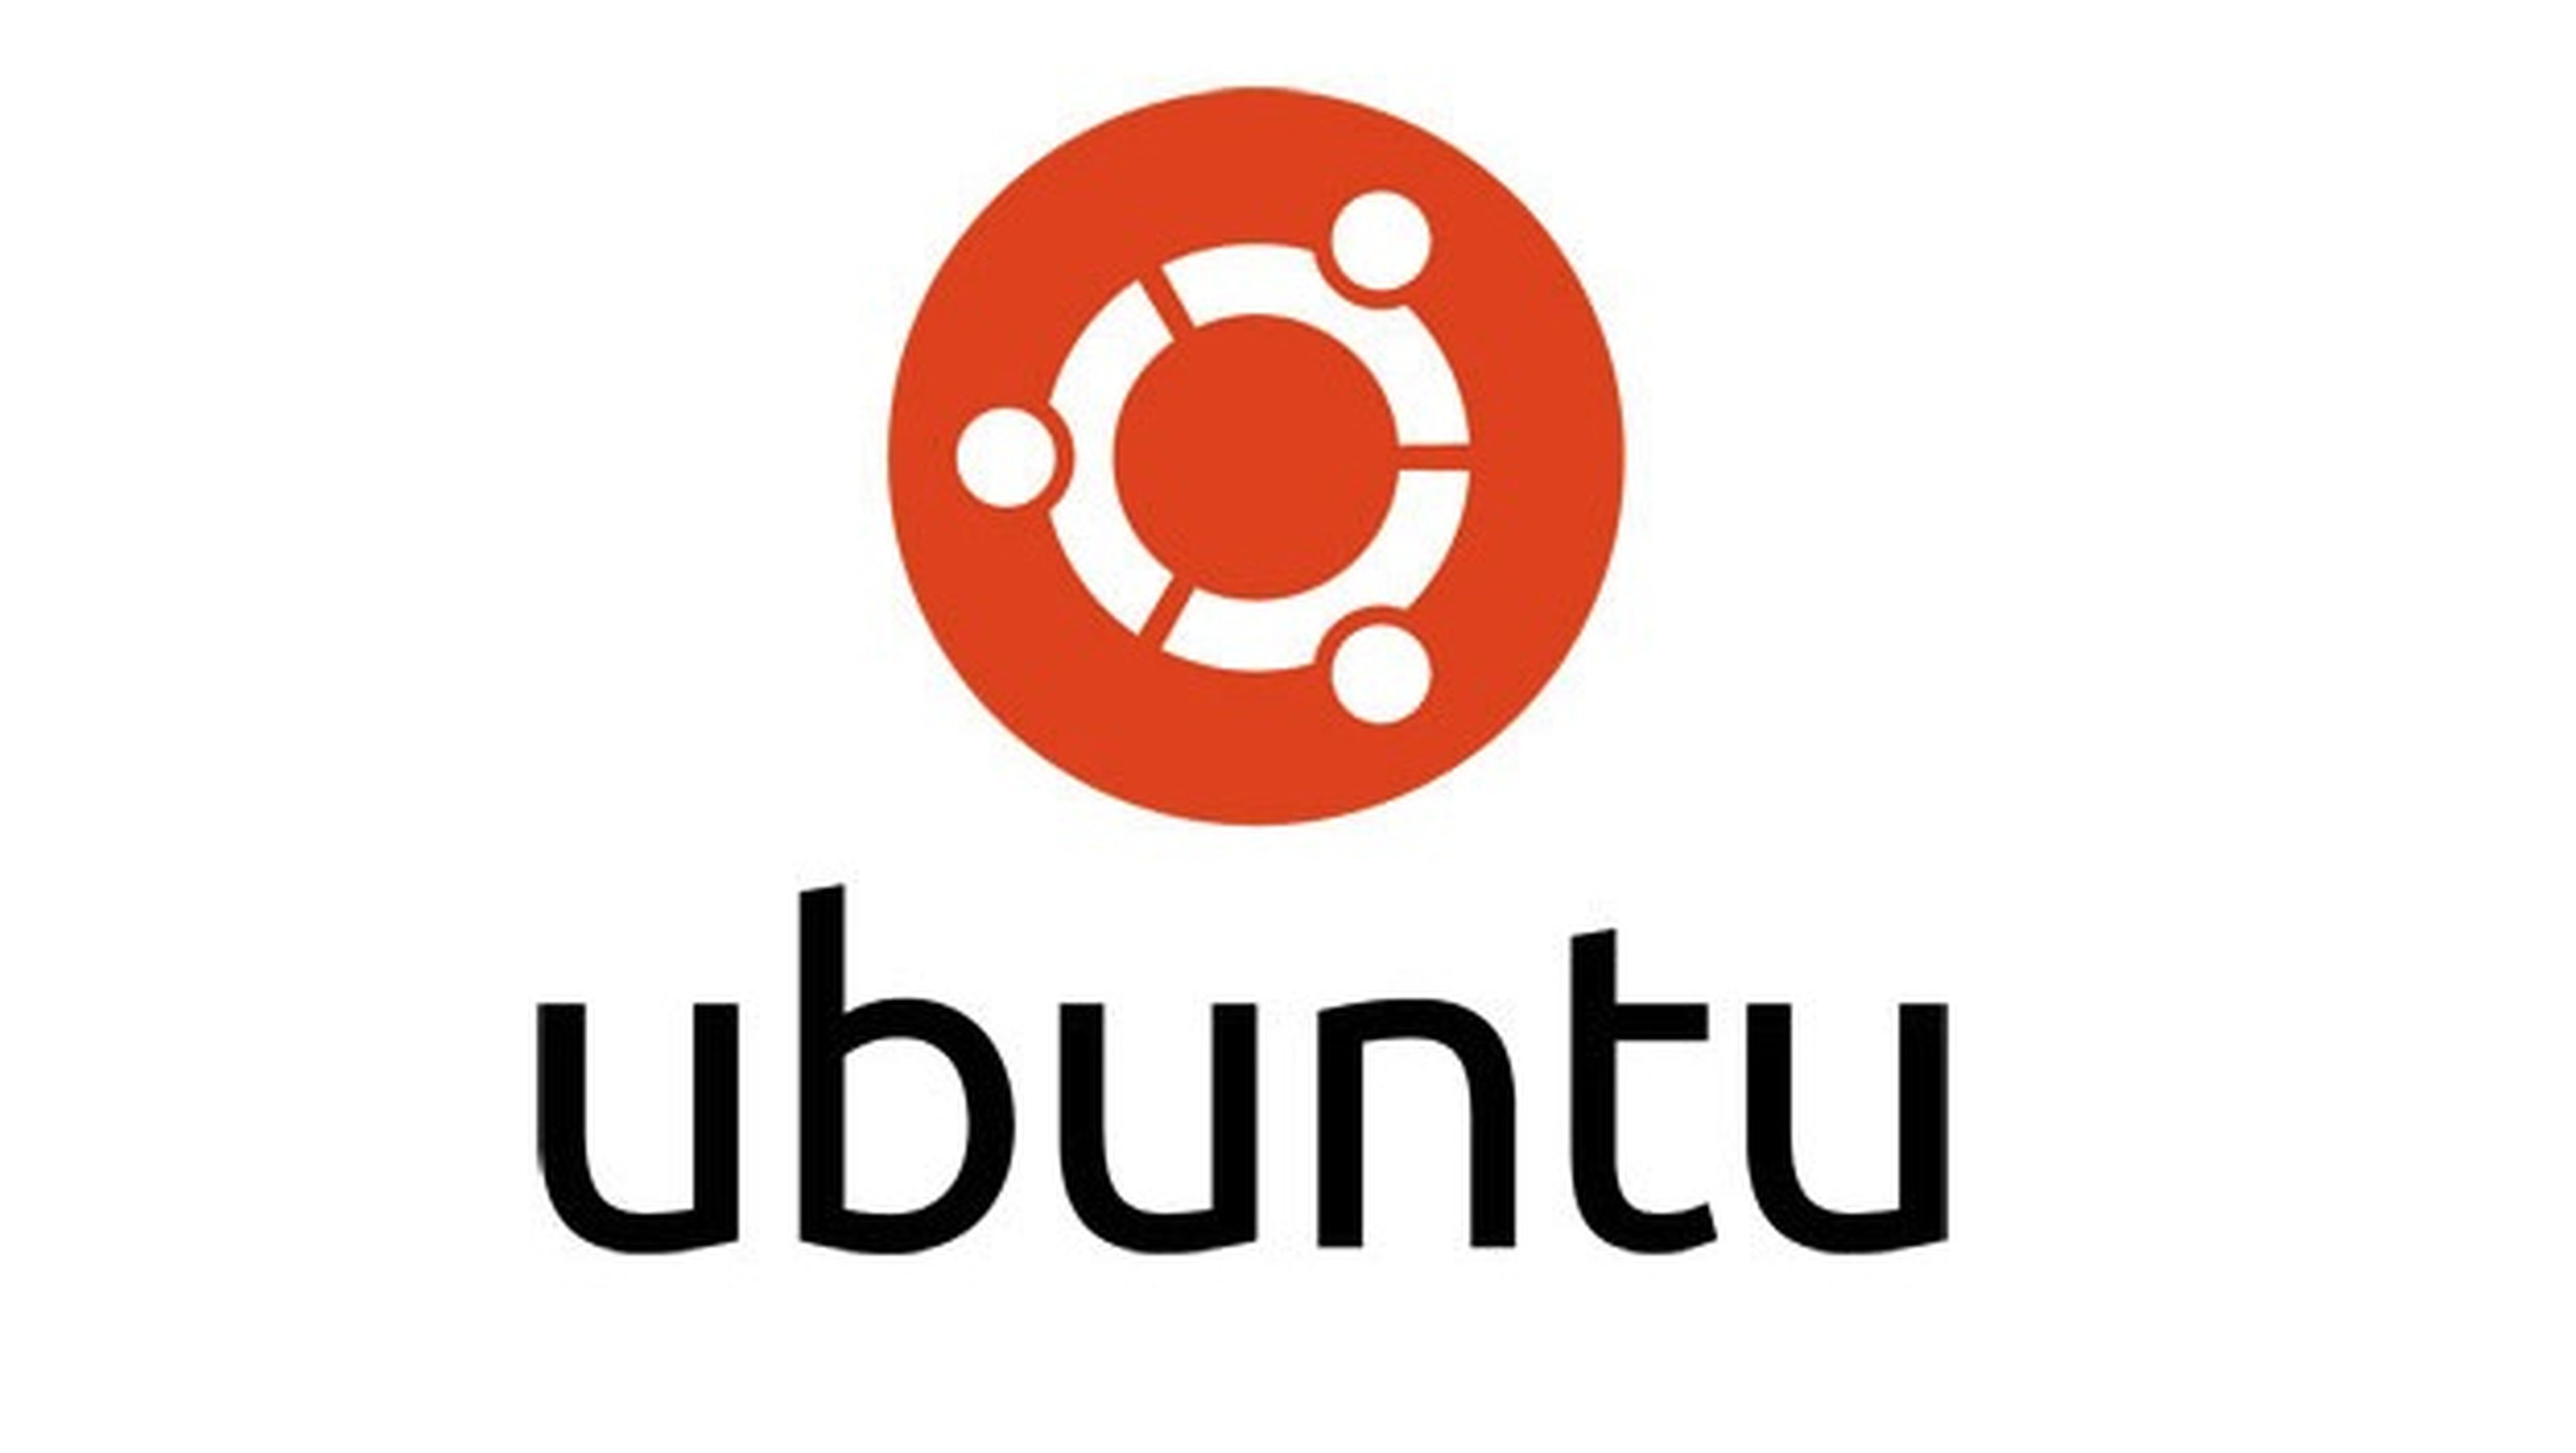 Todo sobre Ubuntu: ¿qué es y qué podemos esperar de este SO?